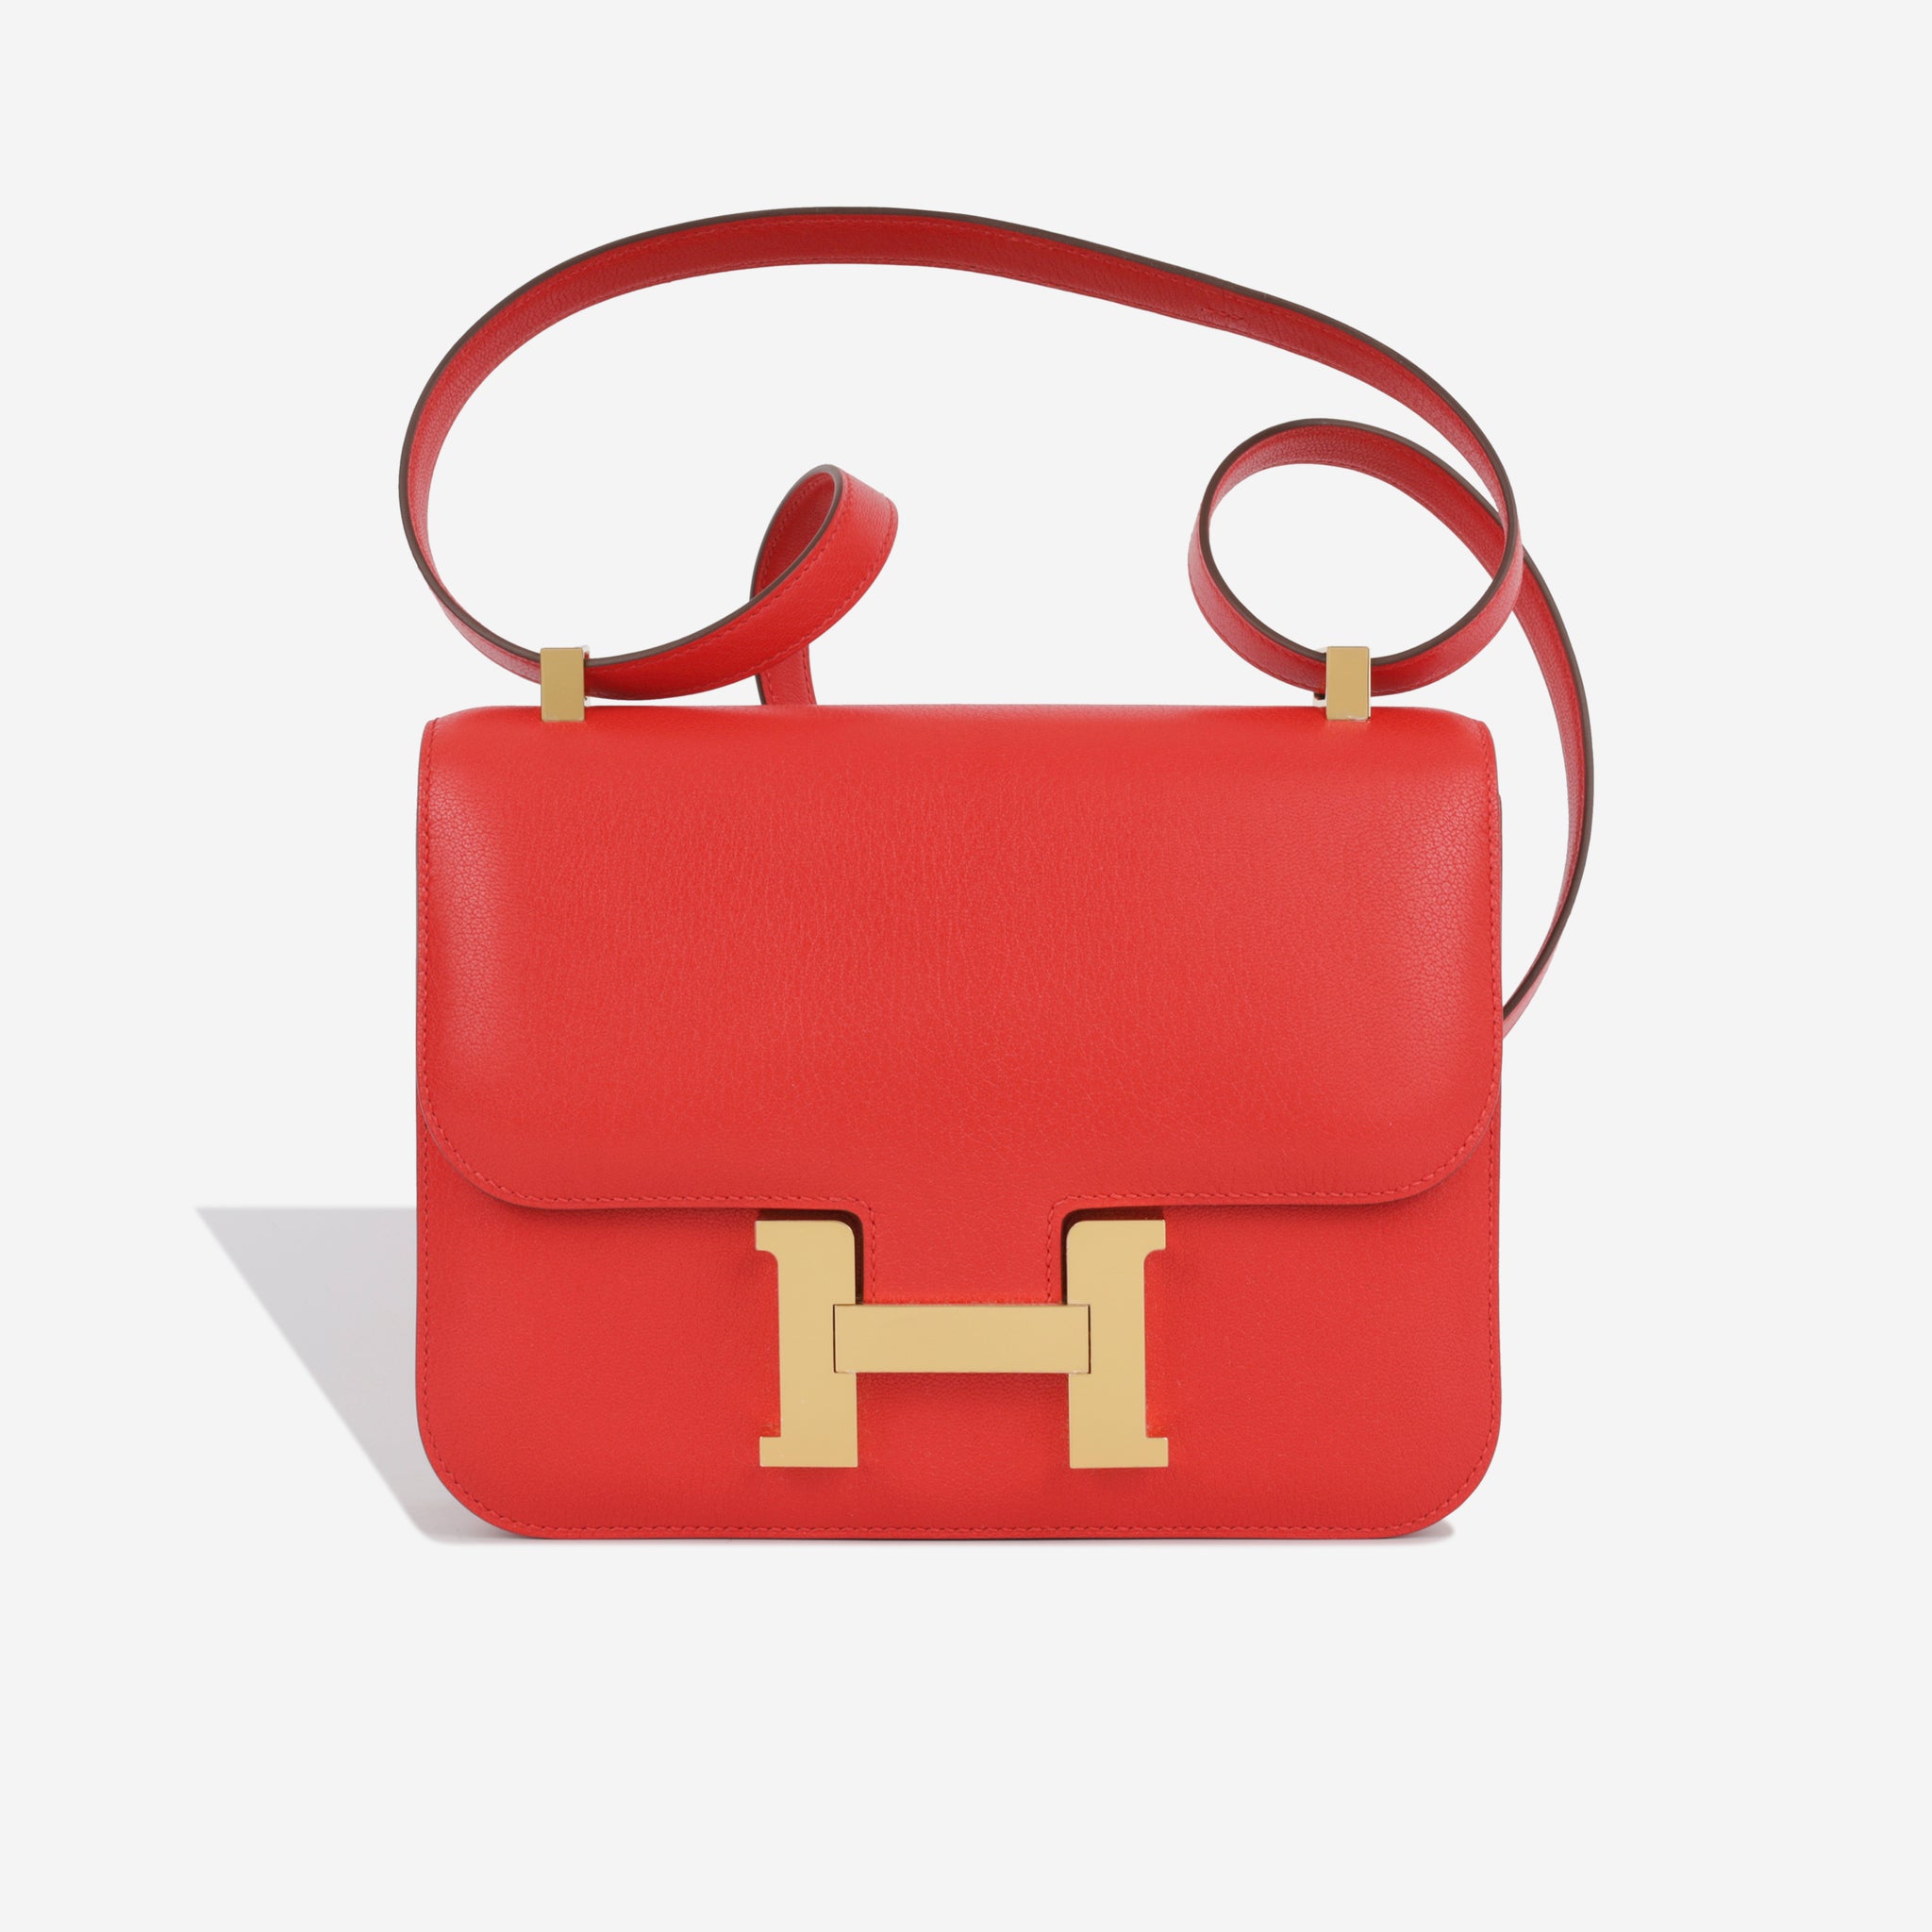 Hermès - Constance 24 - Rouge De Coeur Chèvre - GHW - Brand New